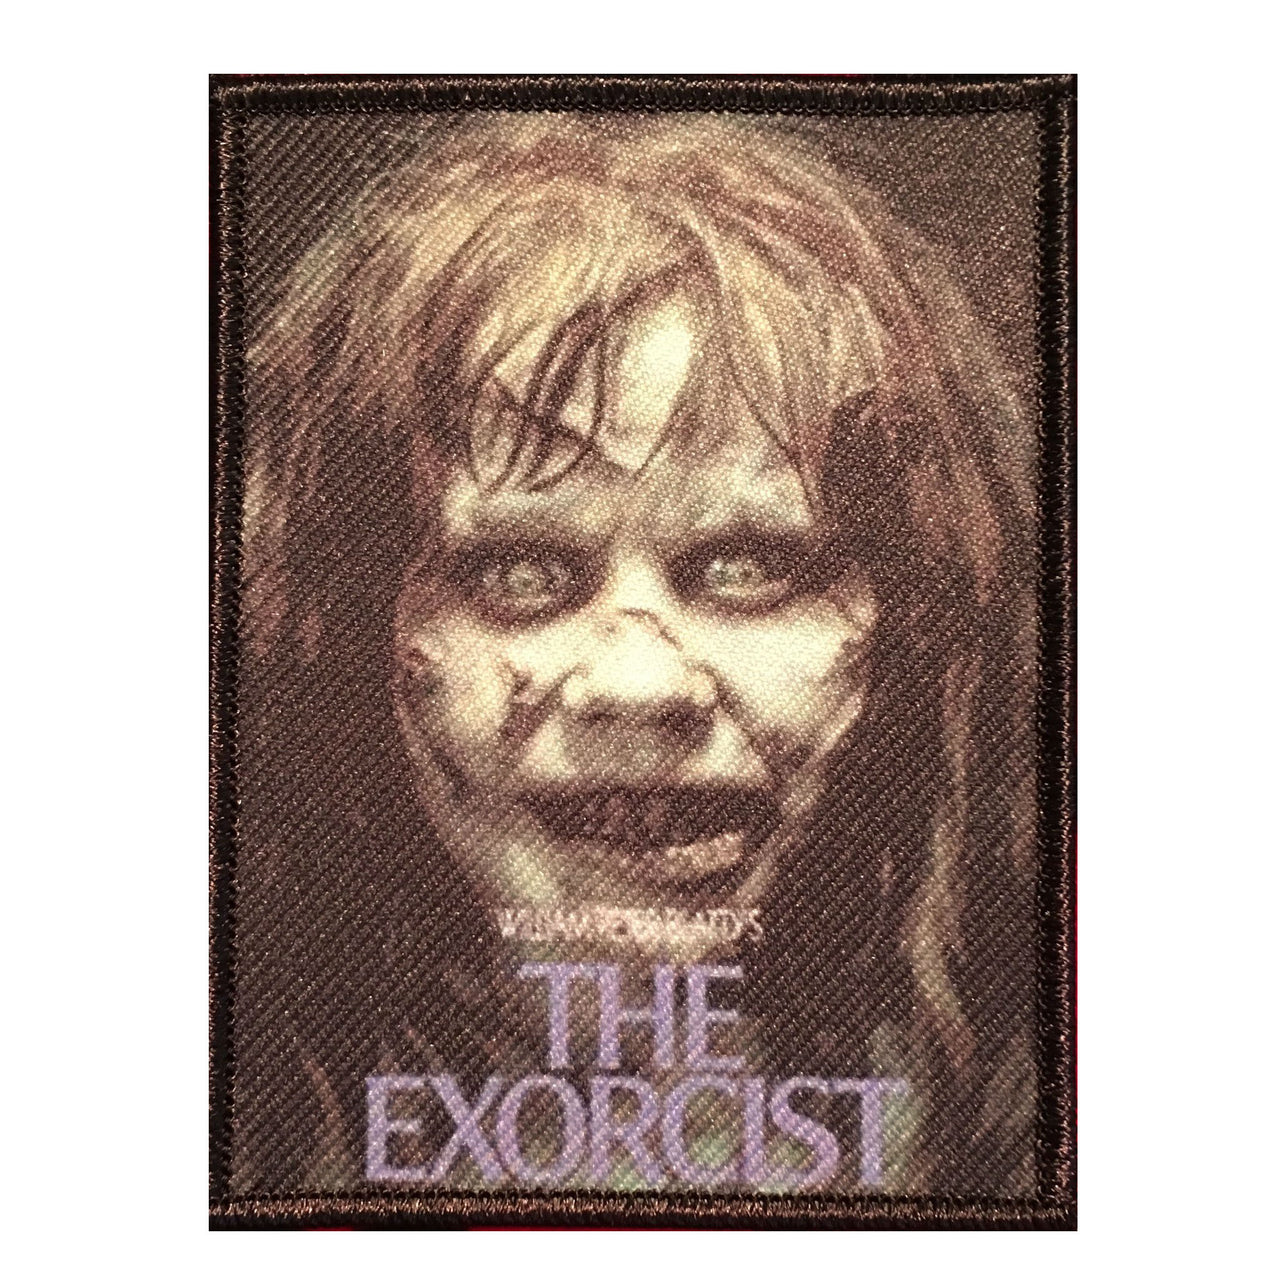 The Exorcist Regan Patch